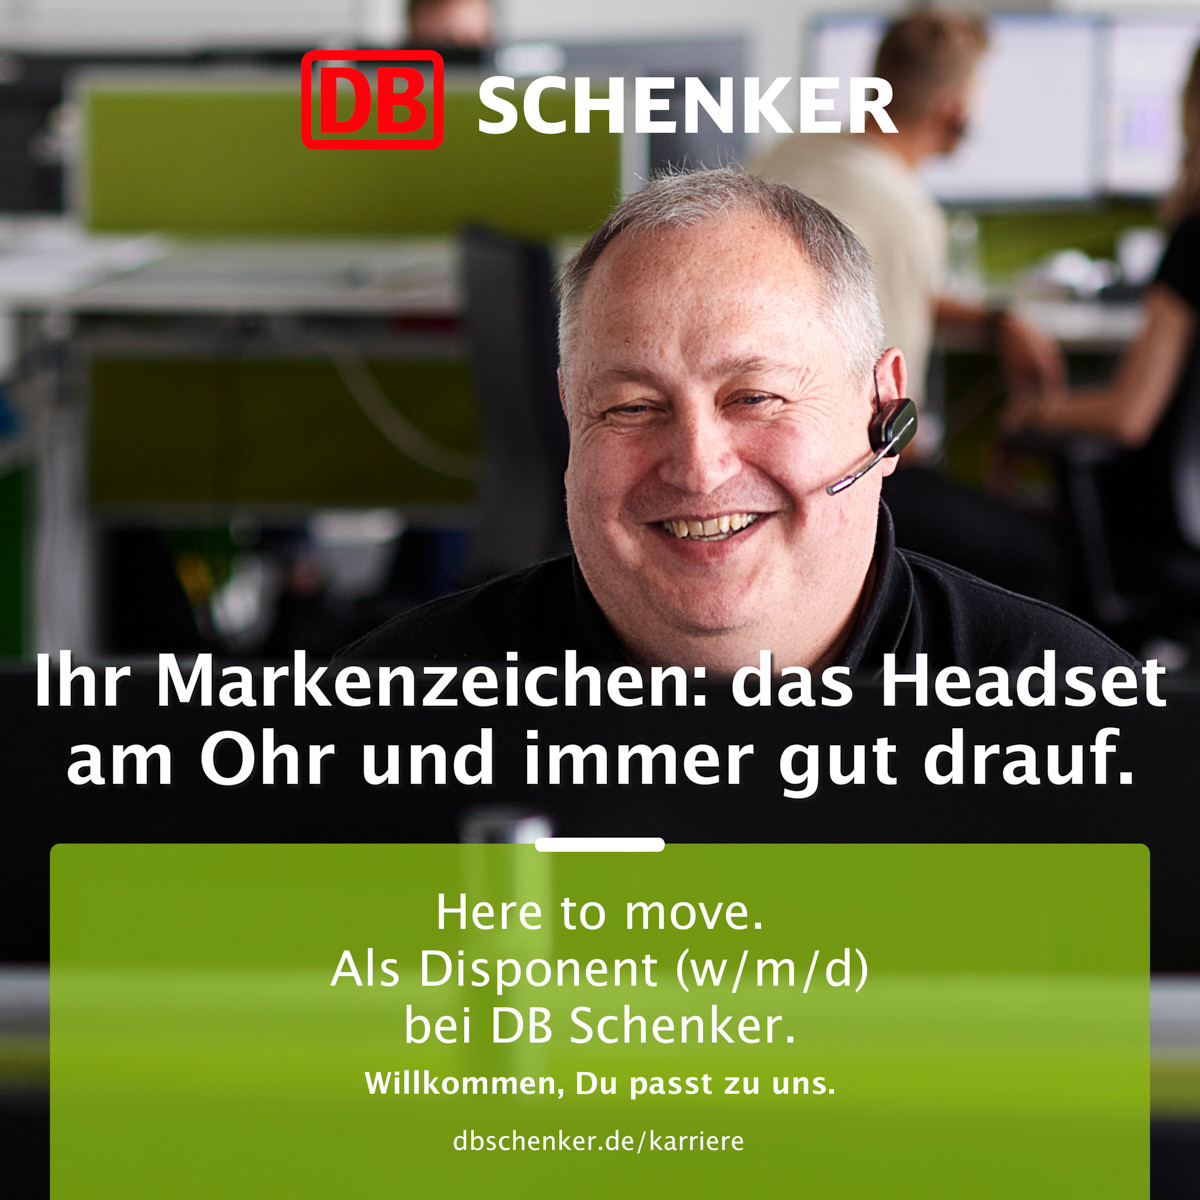 disponent-db-schenker-im-buero-mit-headset-lacht